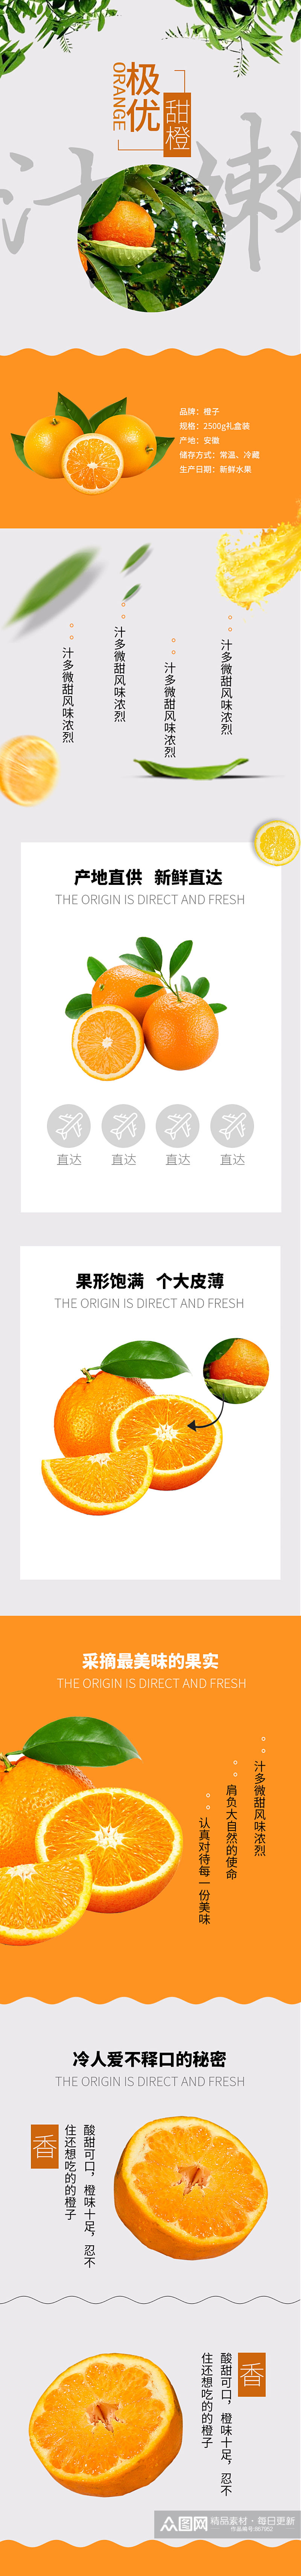 清新时尚简约风格橙子水果详情页素材